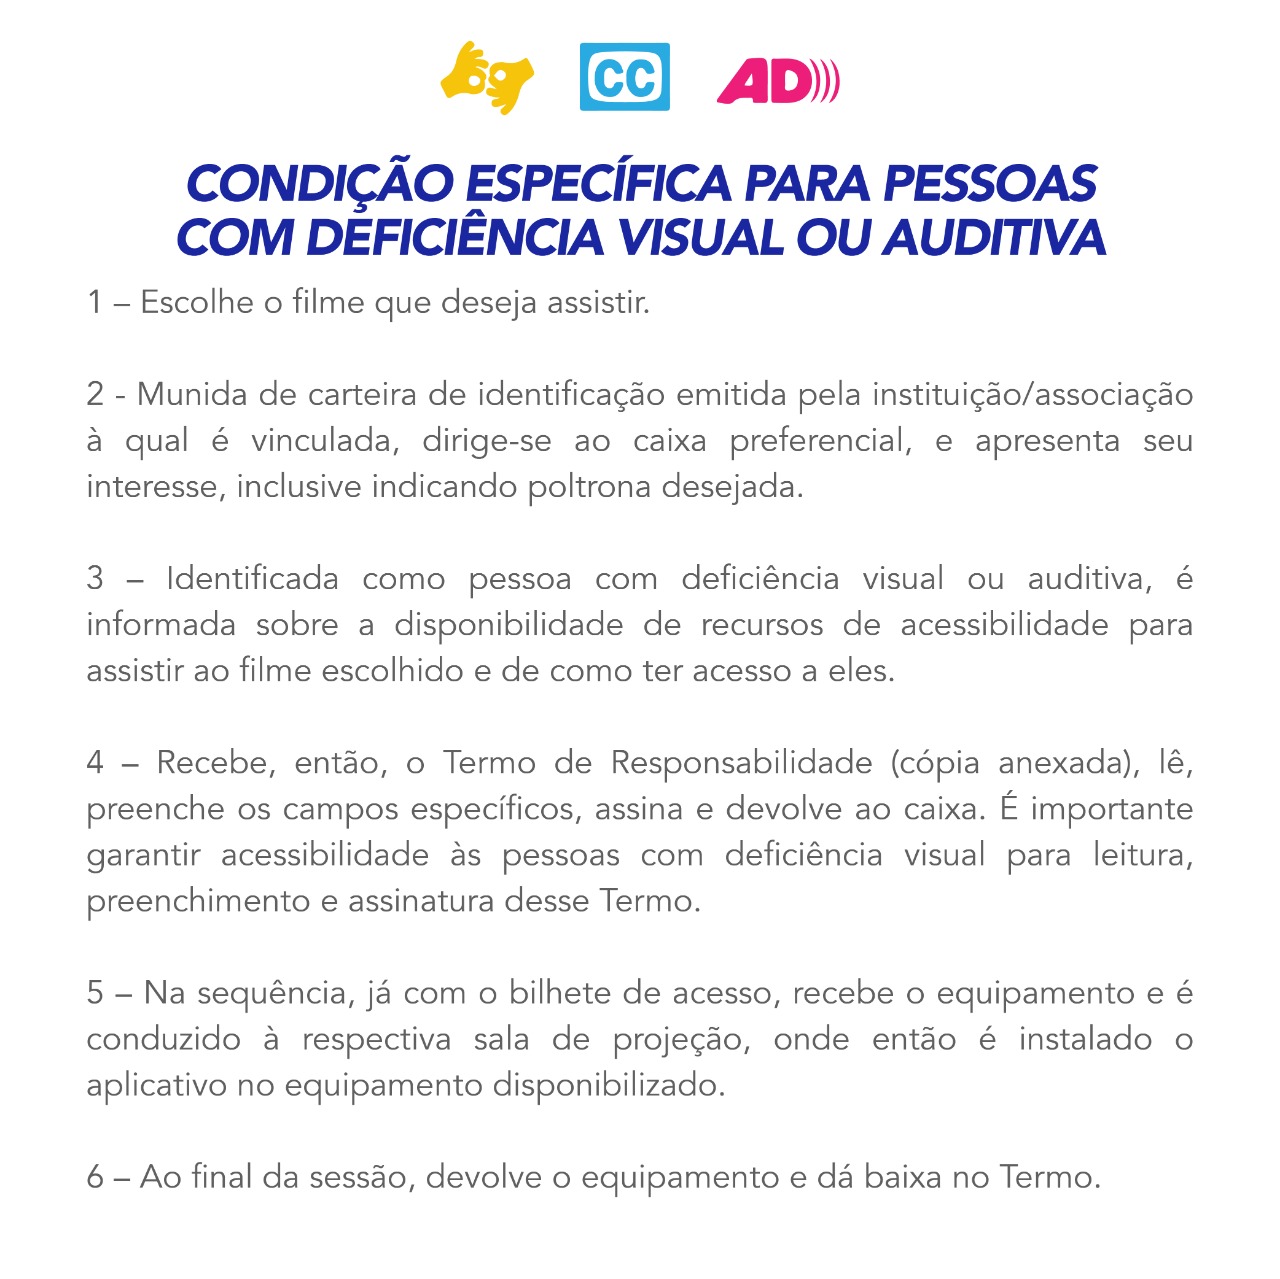 #PraTodoMundo Imagem com texto explicando condições específicas para pessoas com deficiência visual ou auditiva